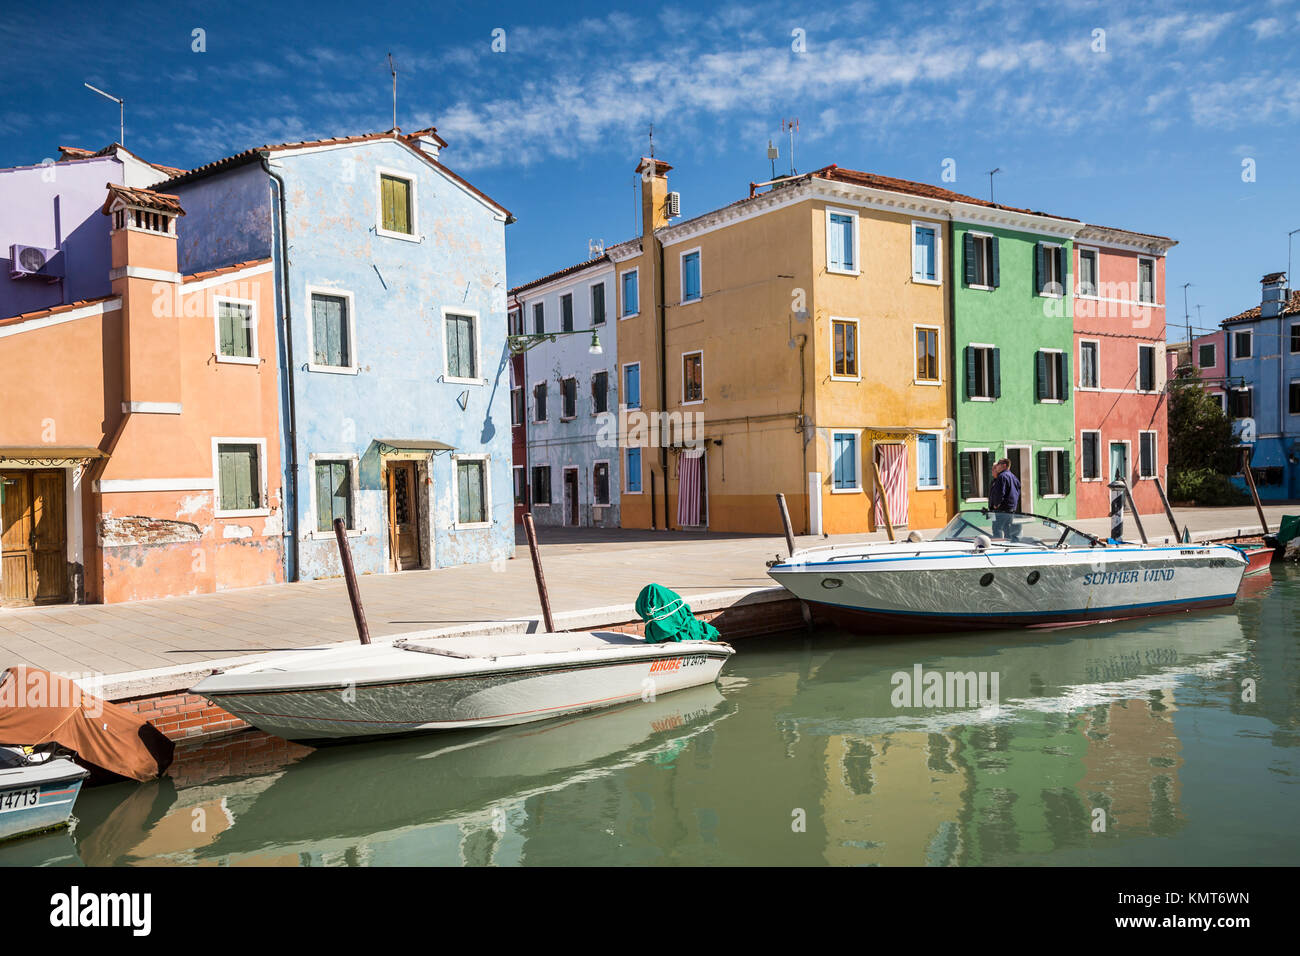 Die farbenfrohen Gebäude, Kanäle und Boote in der Venezianischen vlllage Burano, Venedig, Italien, Europa. Stockfoto